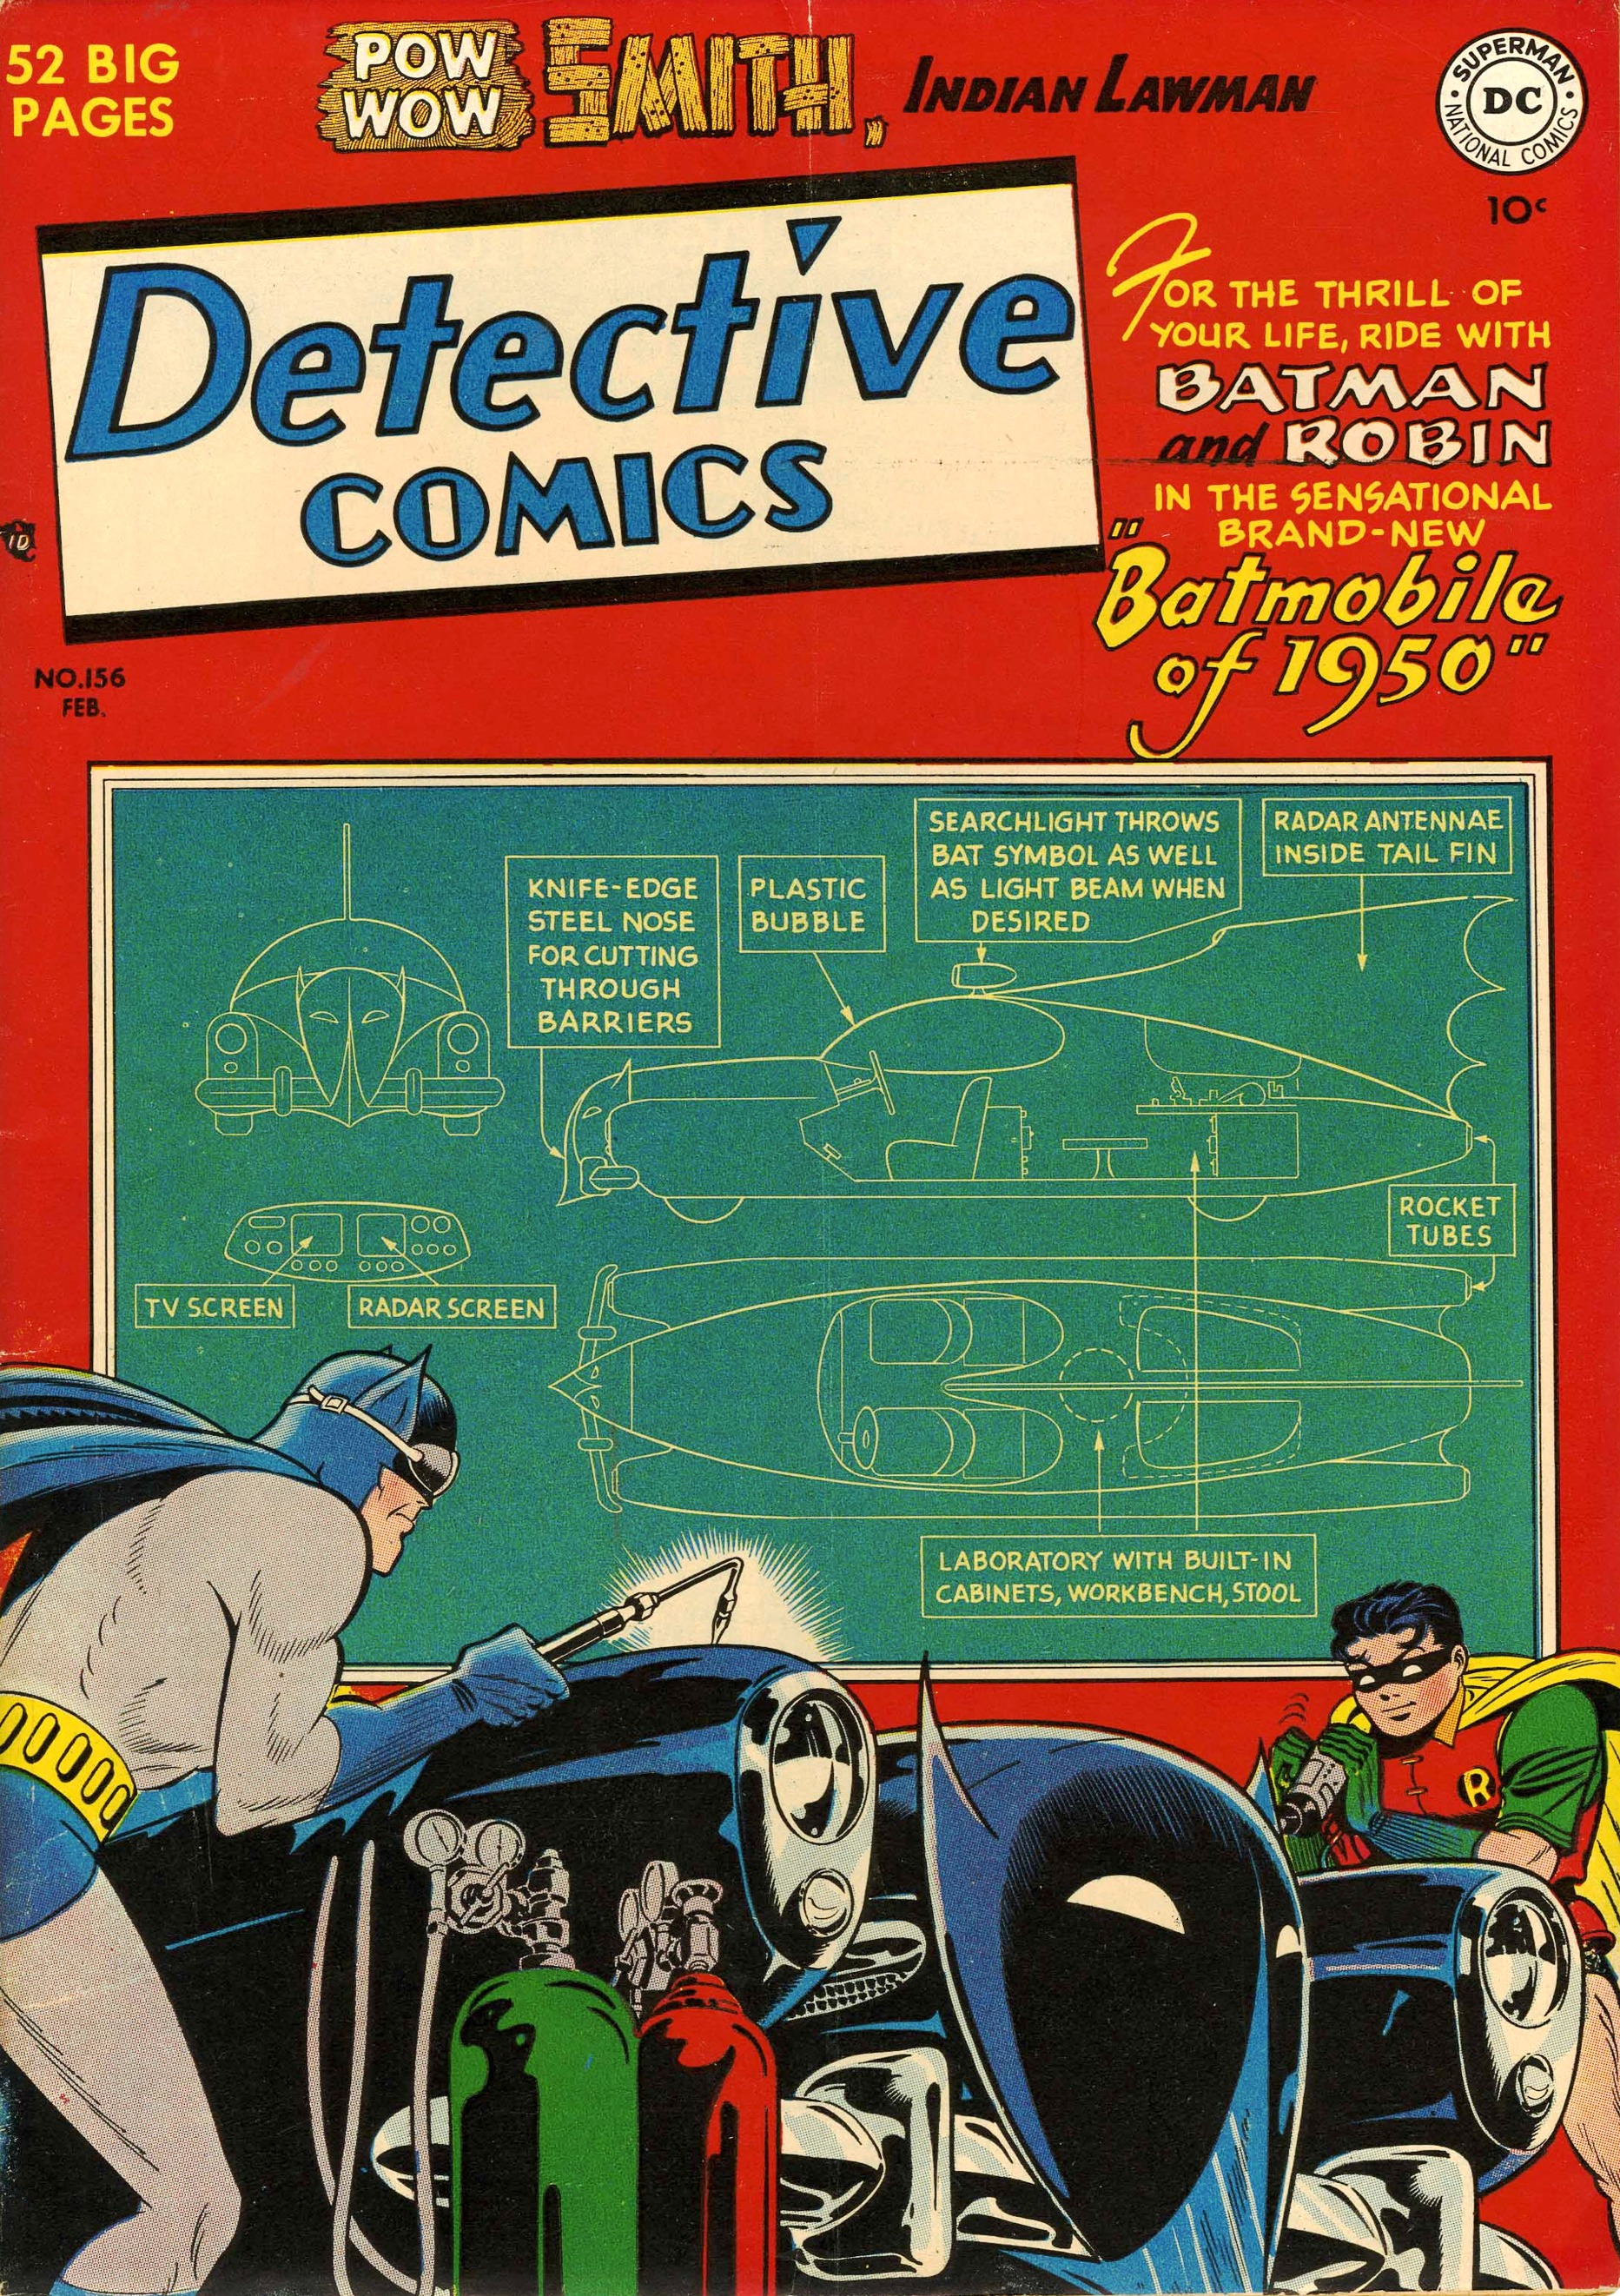 Detective Comics Vol 1 156 | DC Database | Fandom